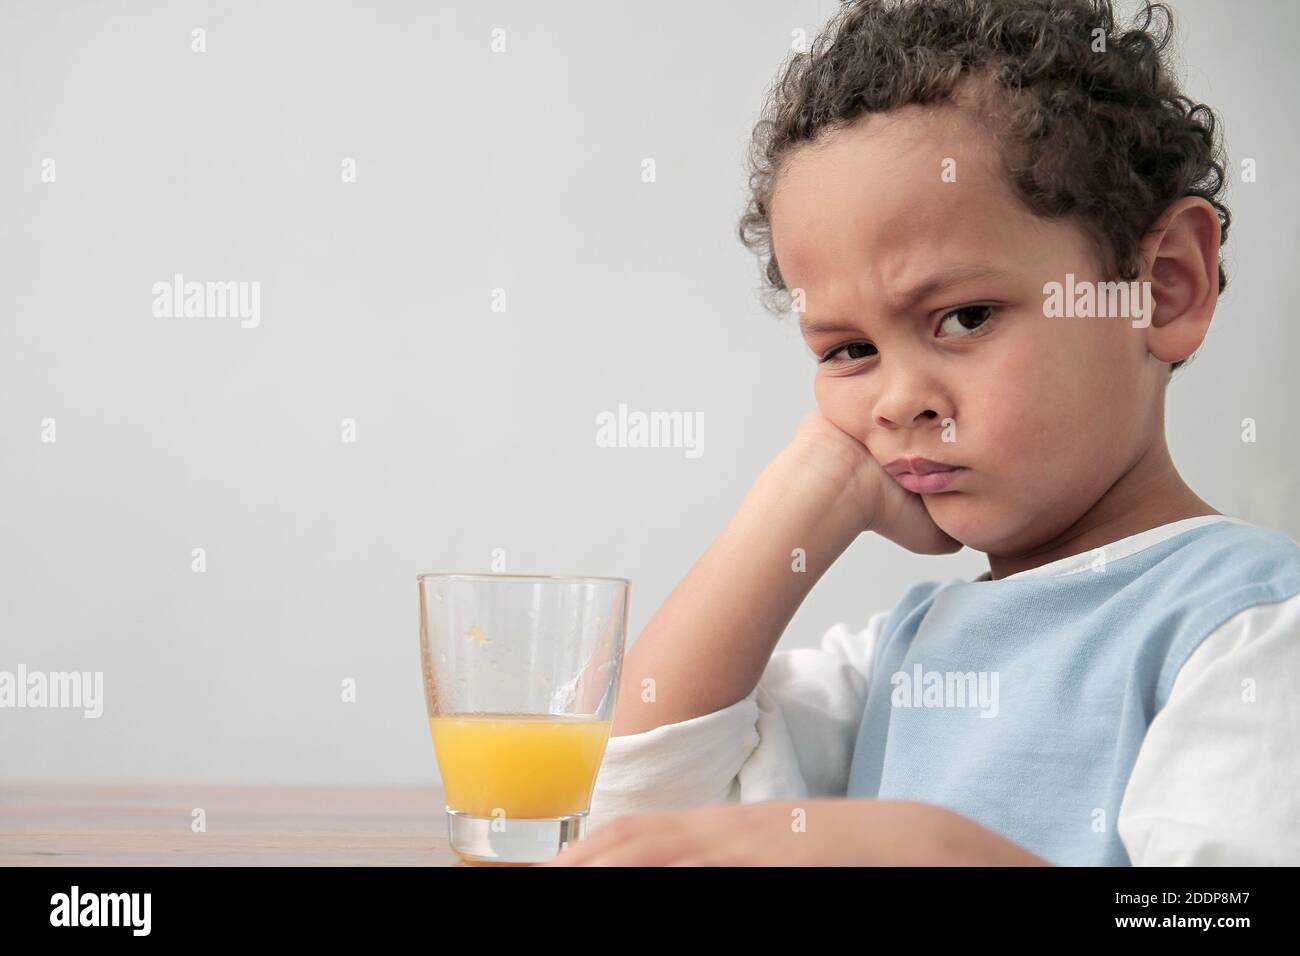 Kind trinkt ein Glas Orangensaft Förderung gesund Essen Stock Foto Stockfoto